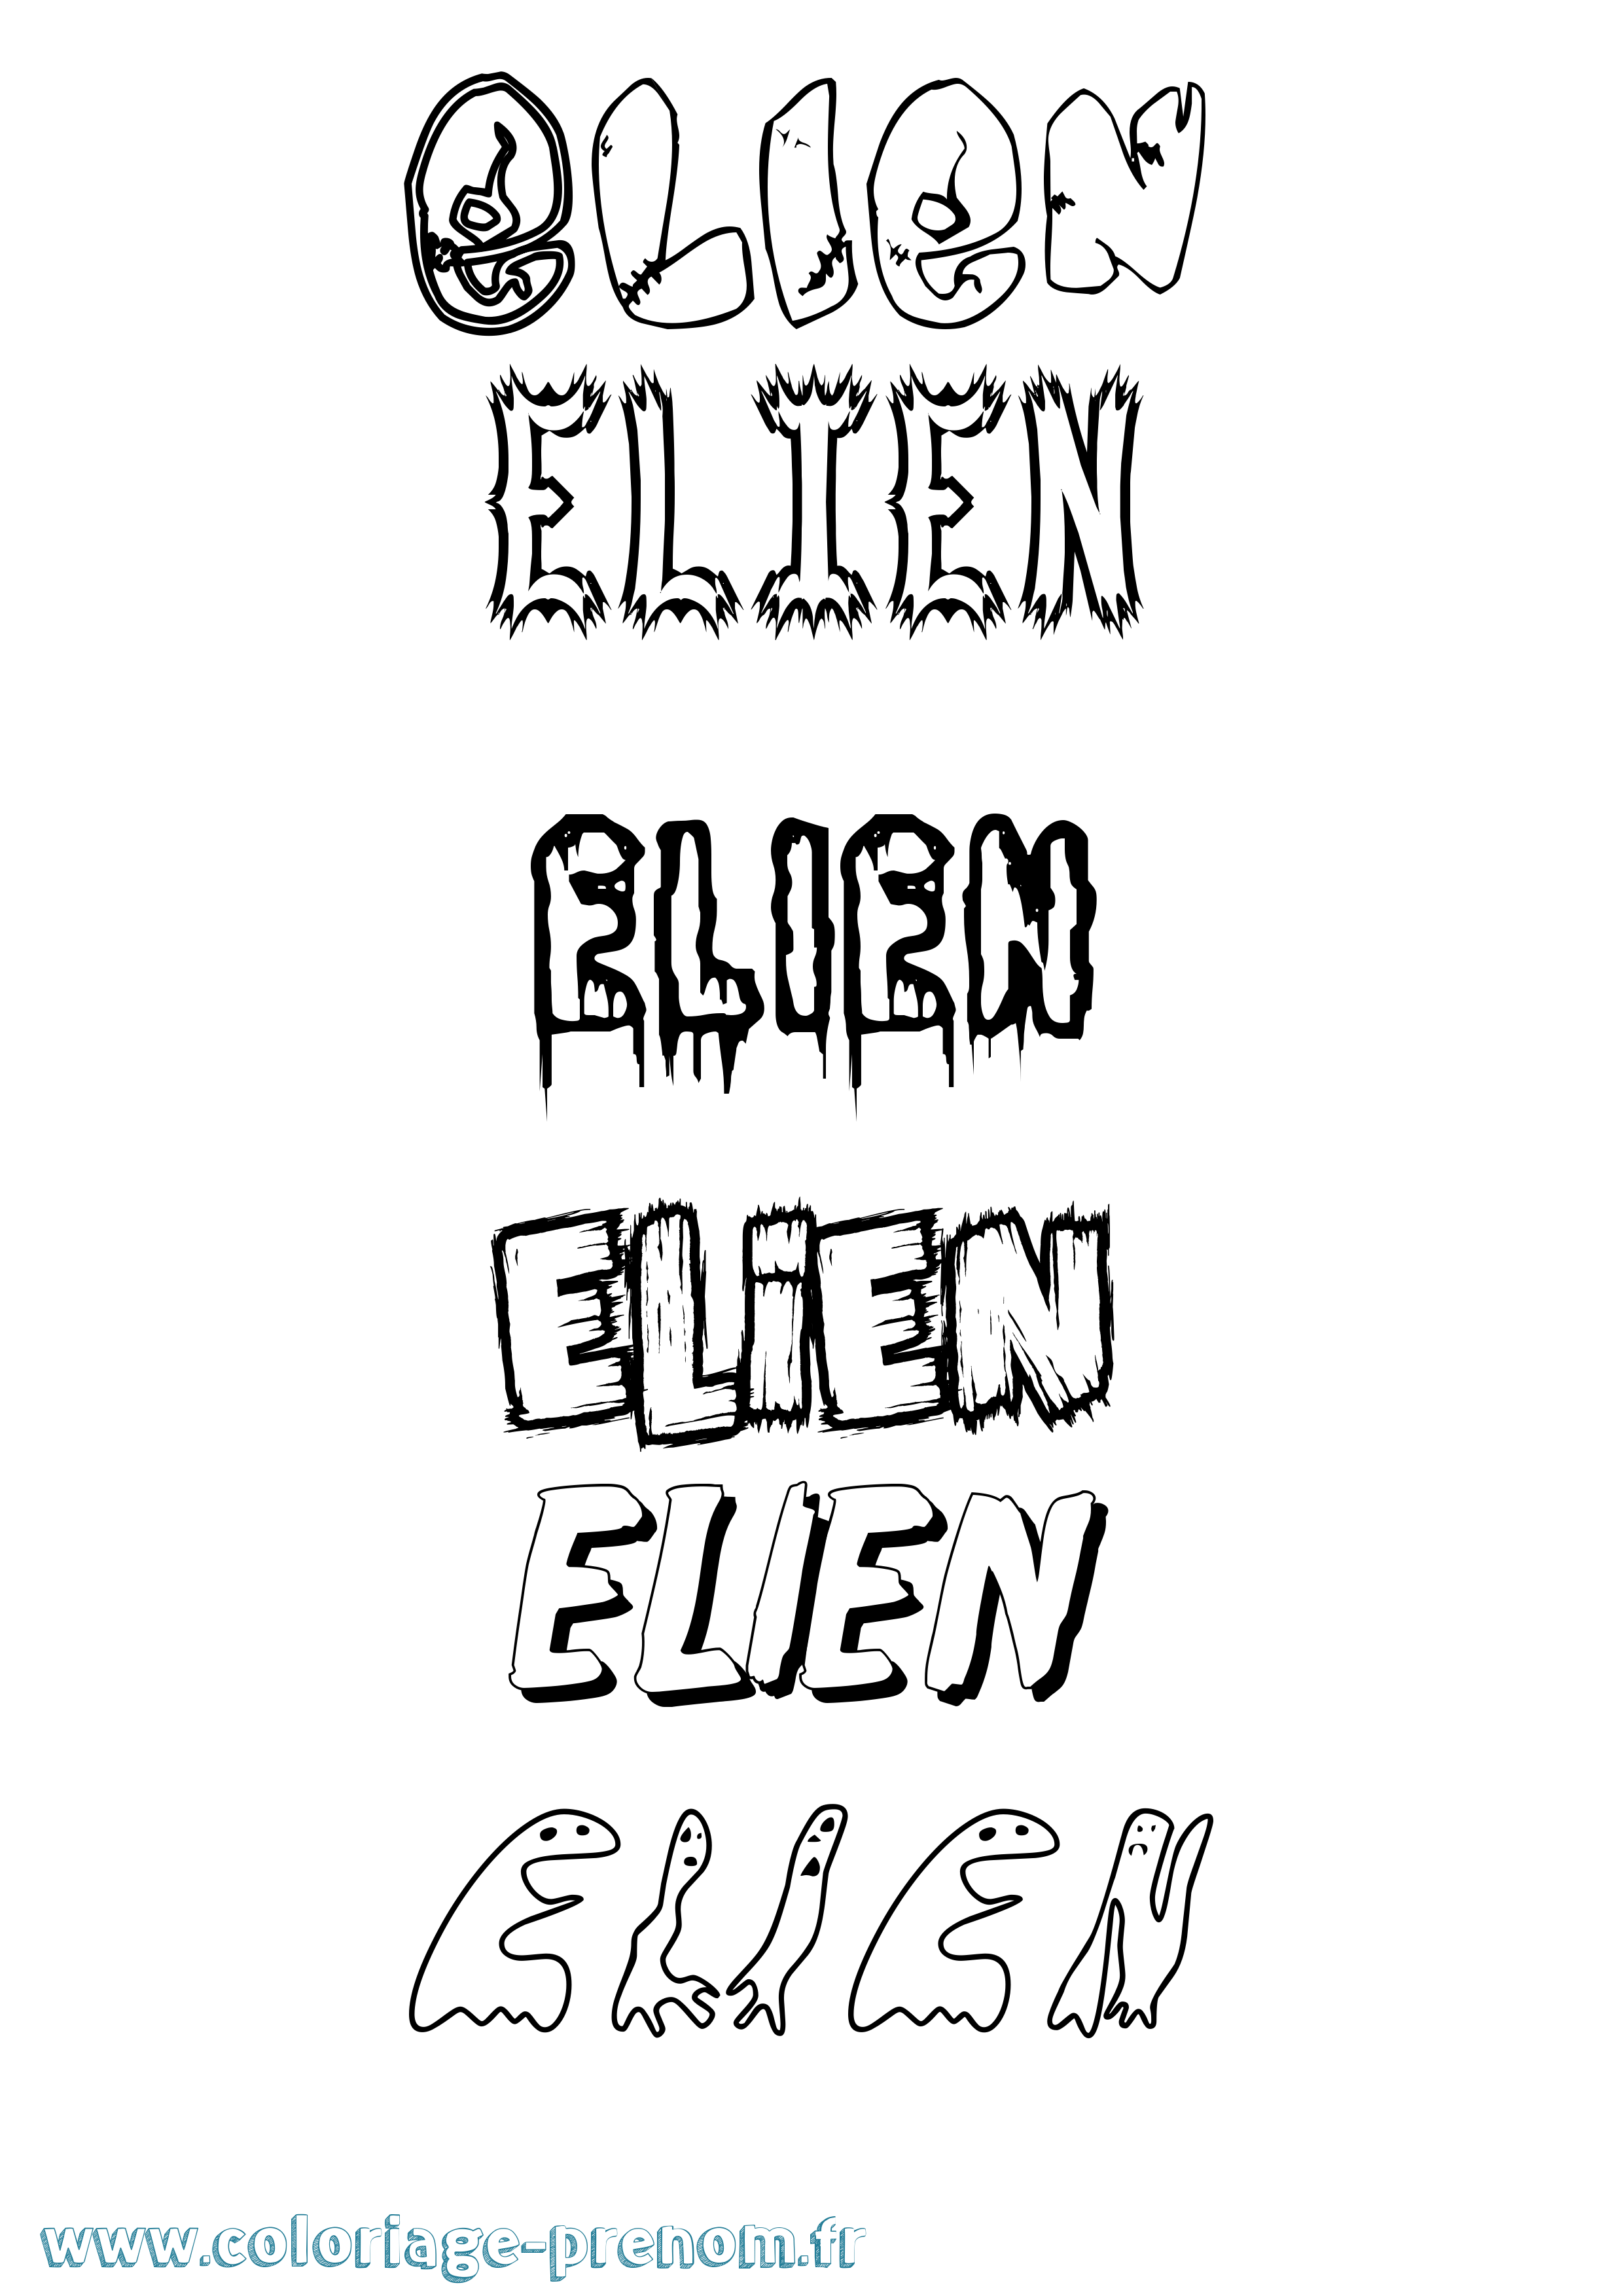 Coloriage prénom Elien Frisson